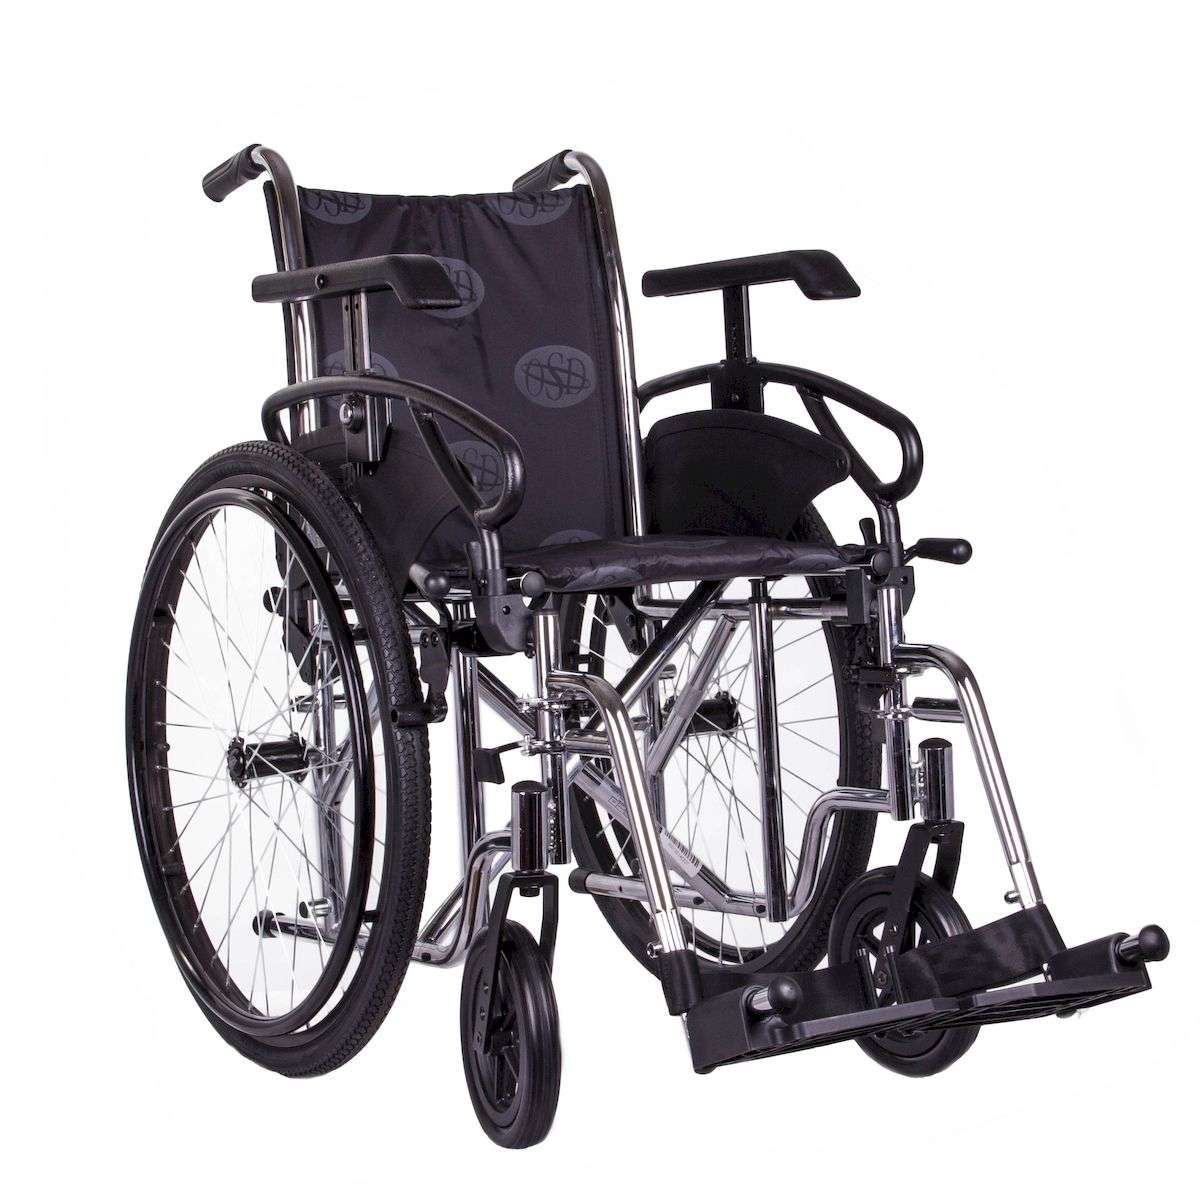 Уценка. Стандартная инвалидная коляска OSD Millenium 3